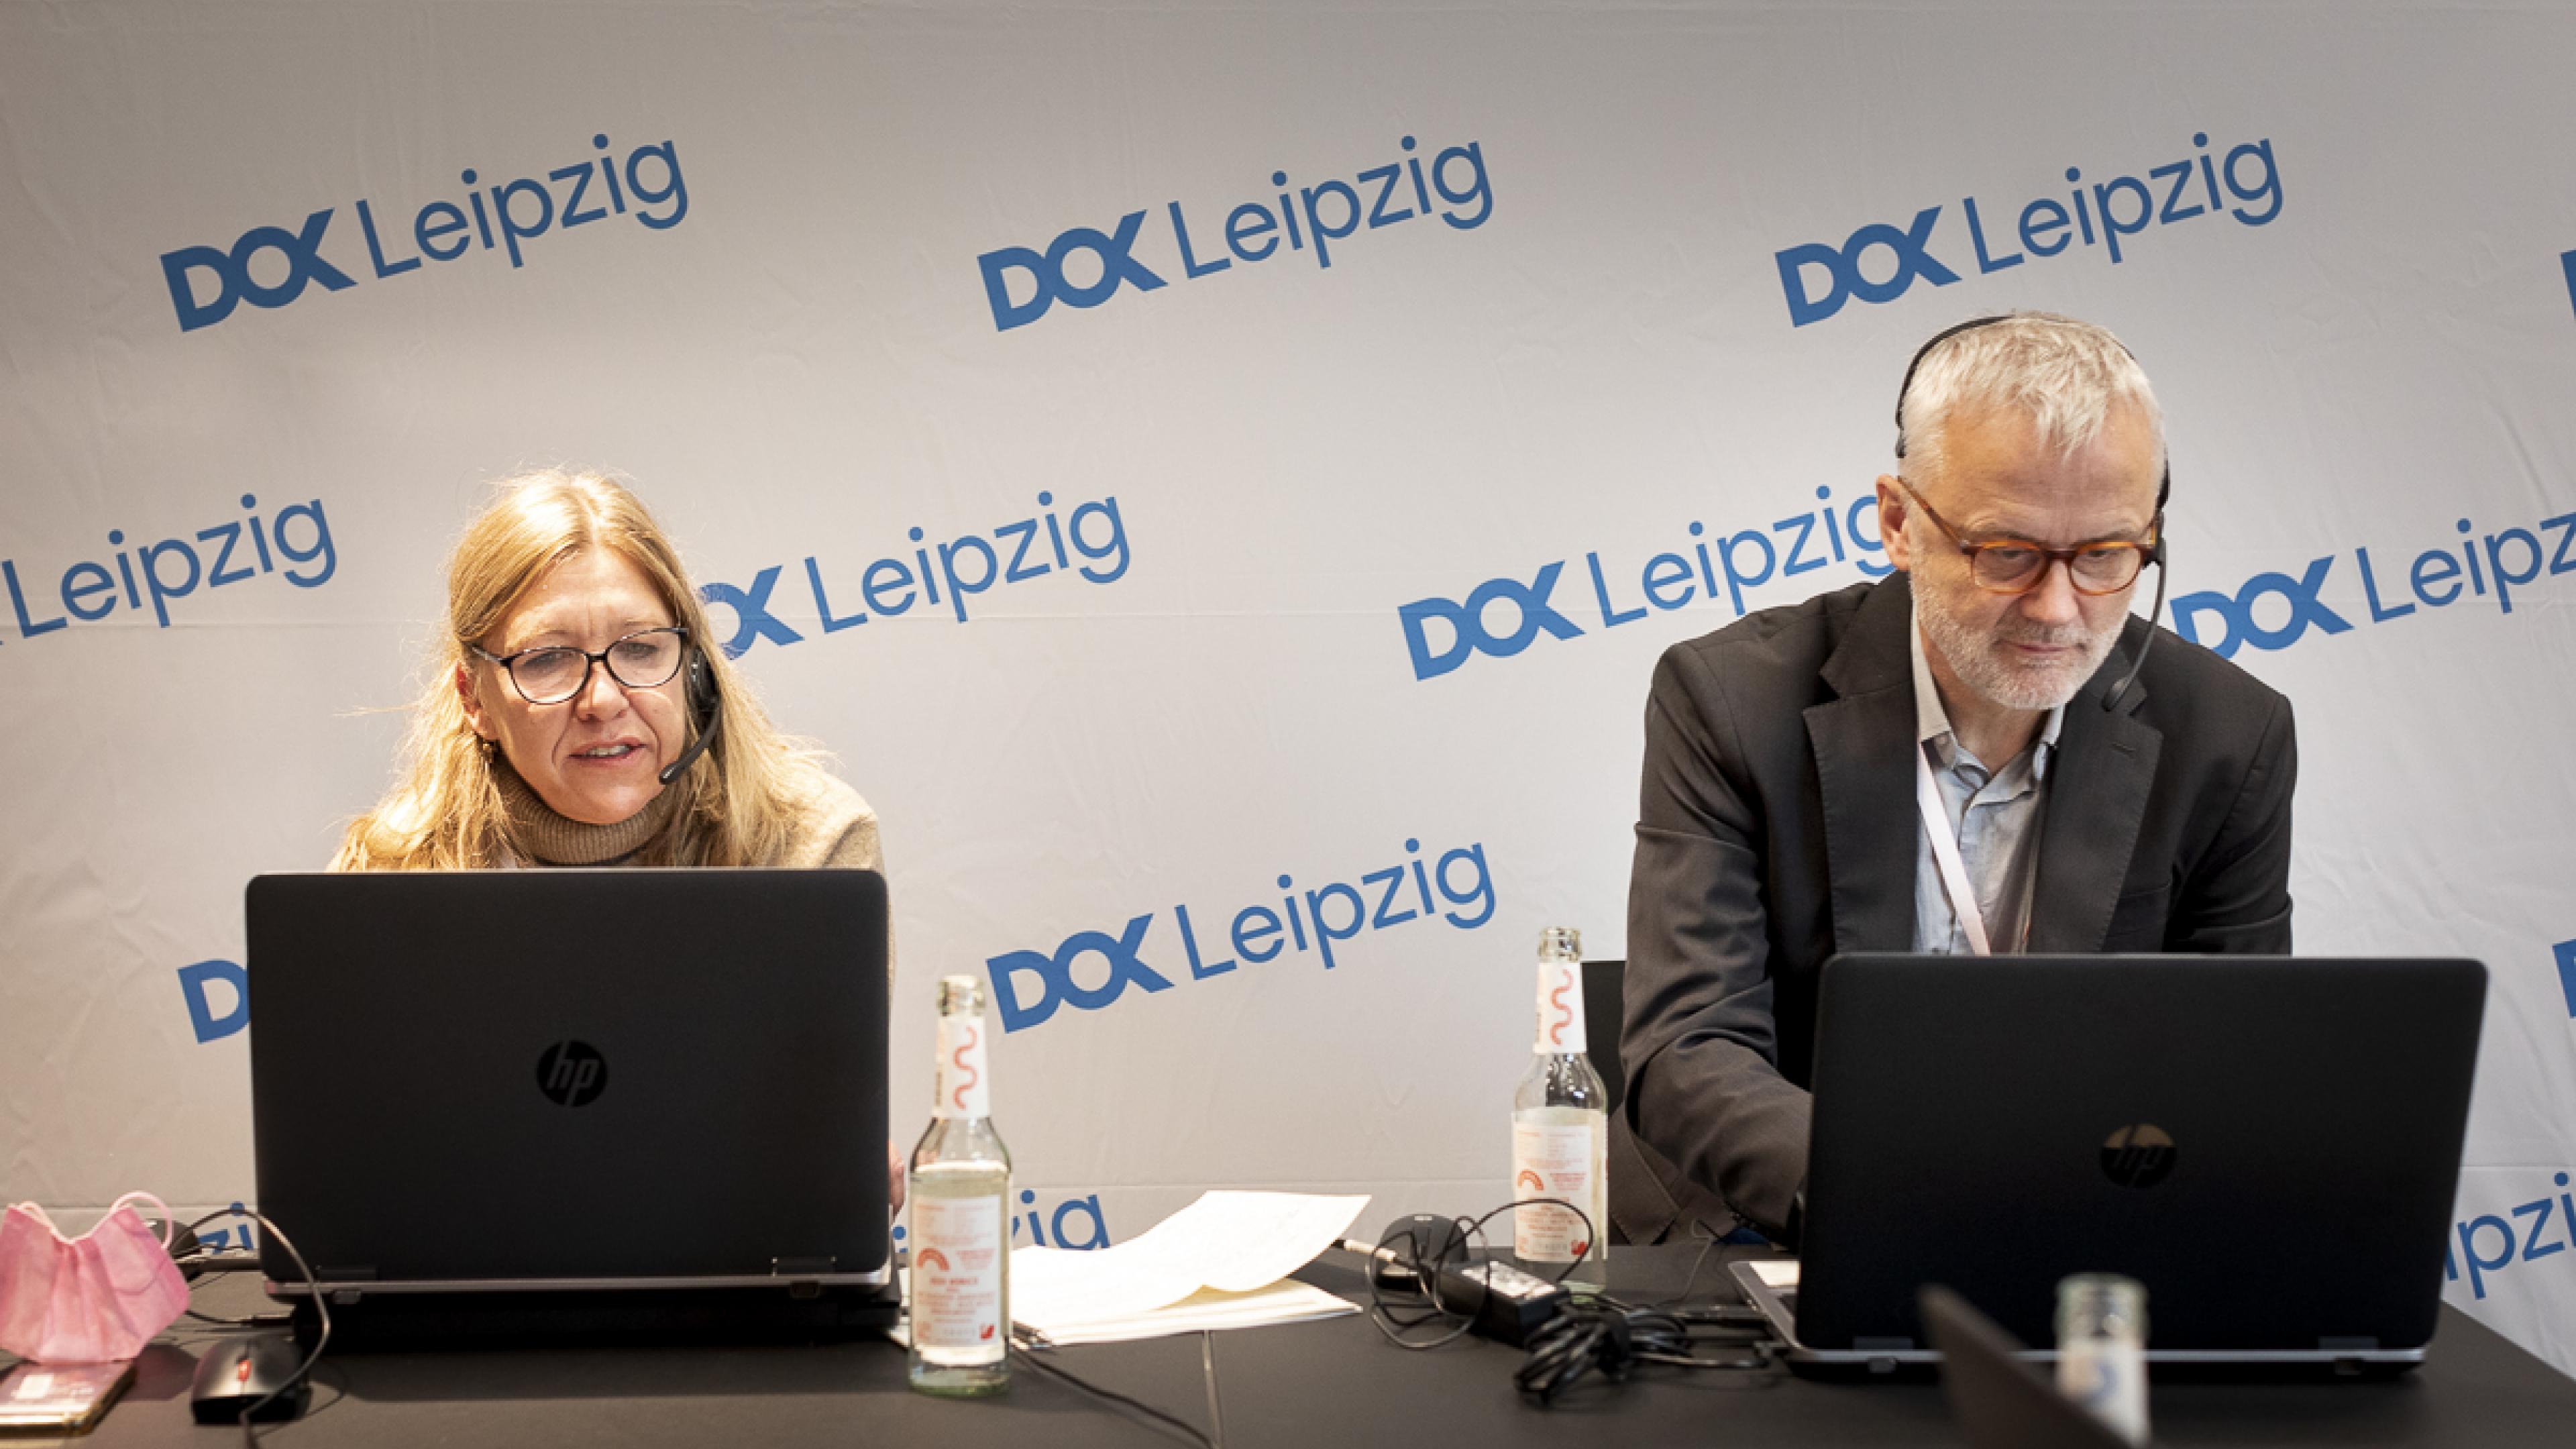 Nadja Tennstedt und Christoph Terhechte sitzen nebeneinander an zwei Laptops und blicken konzentriert auf die Bildschirme. Hinter ihnen eine Logowand mit dem DOK Leipzig Logo in blau.